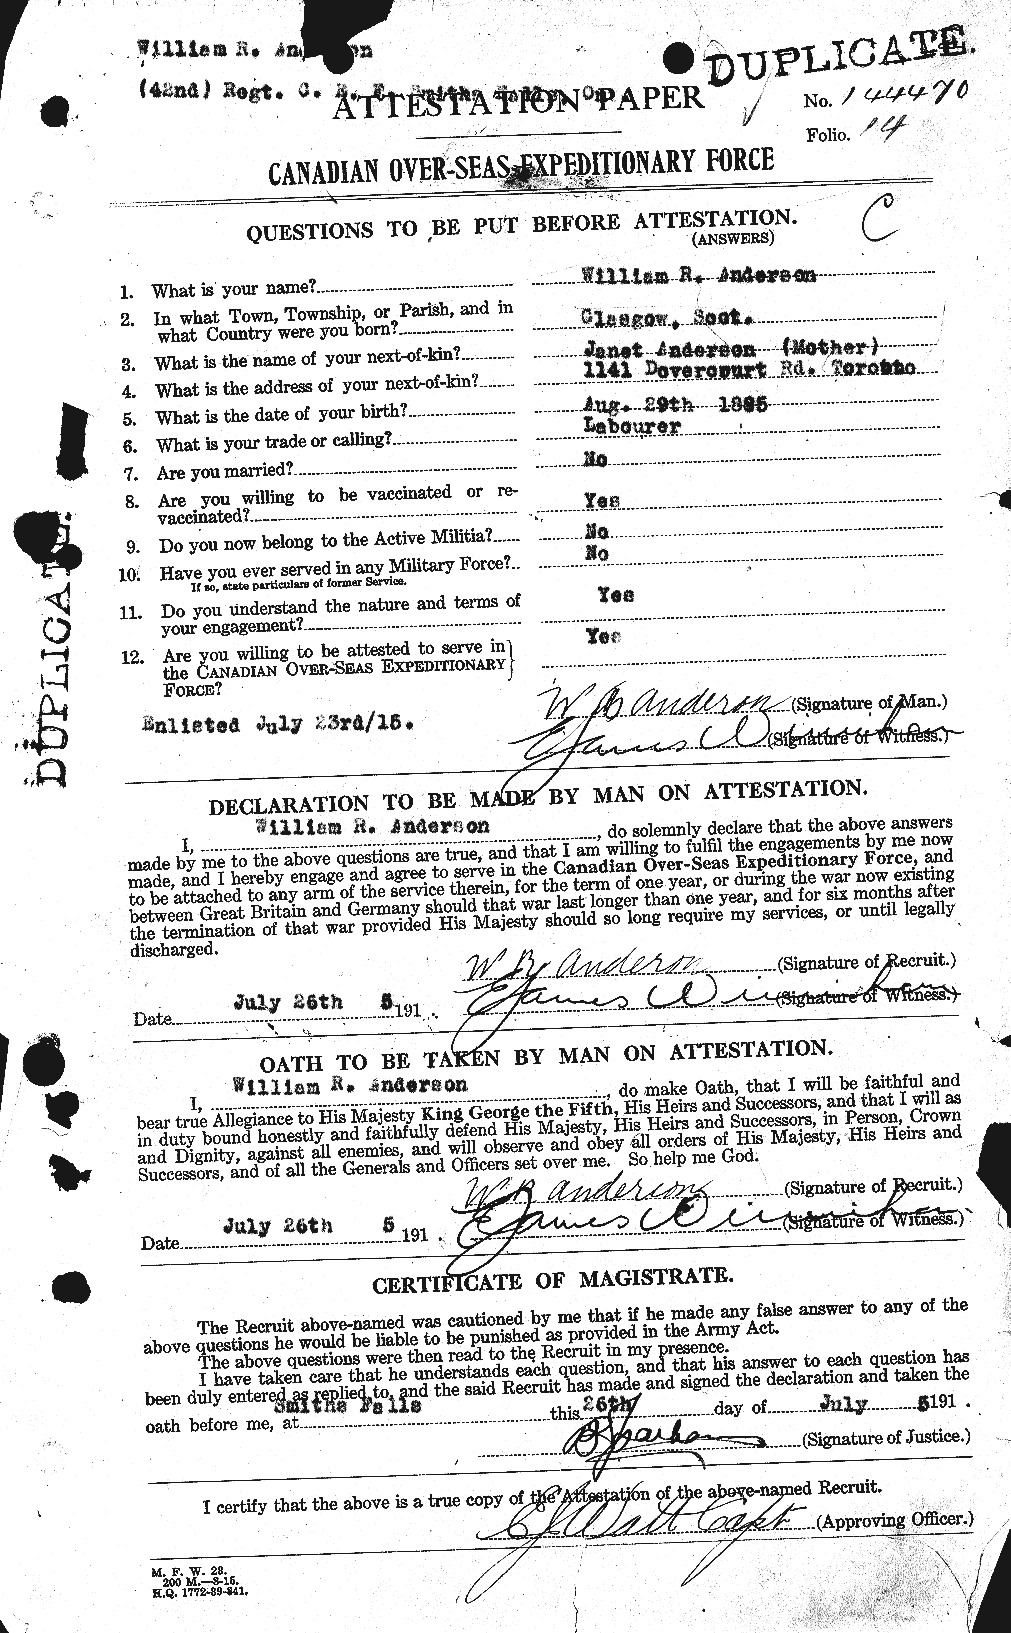 Dossiers du Personnel de la Première Guerre mondiale - CEC 210677a